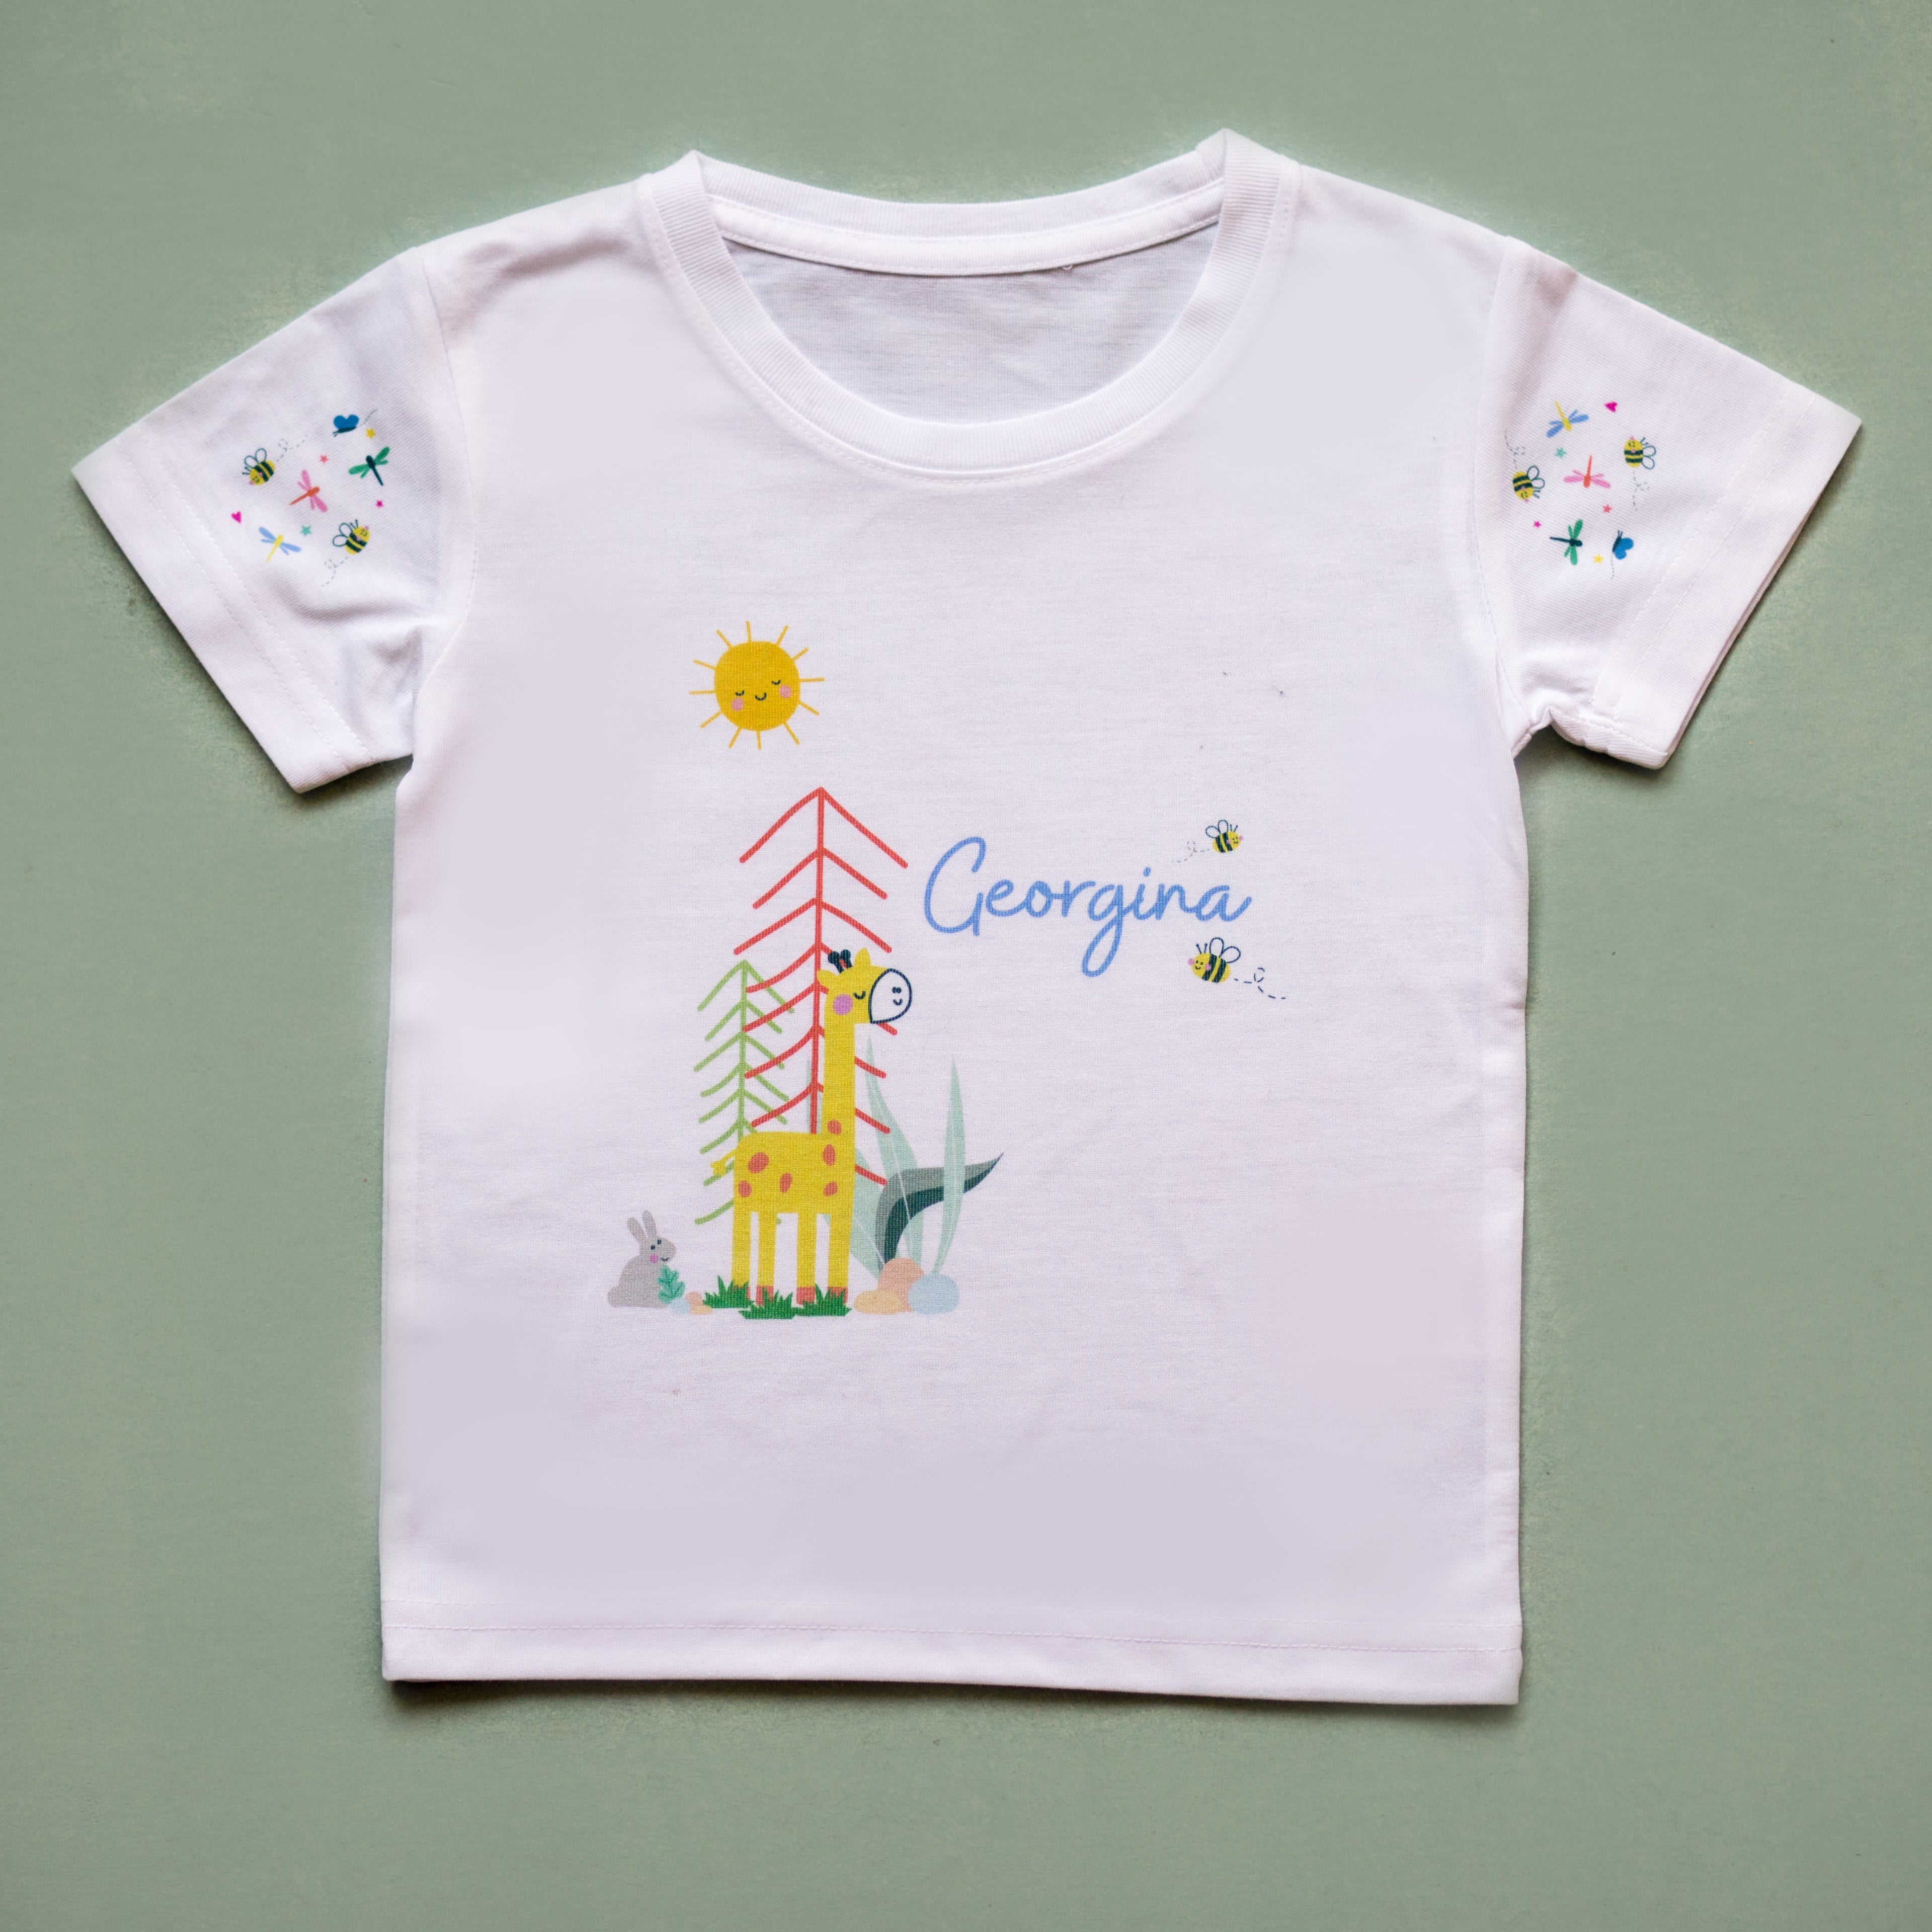 Personalised Children's Giraffe Themed T Shirt